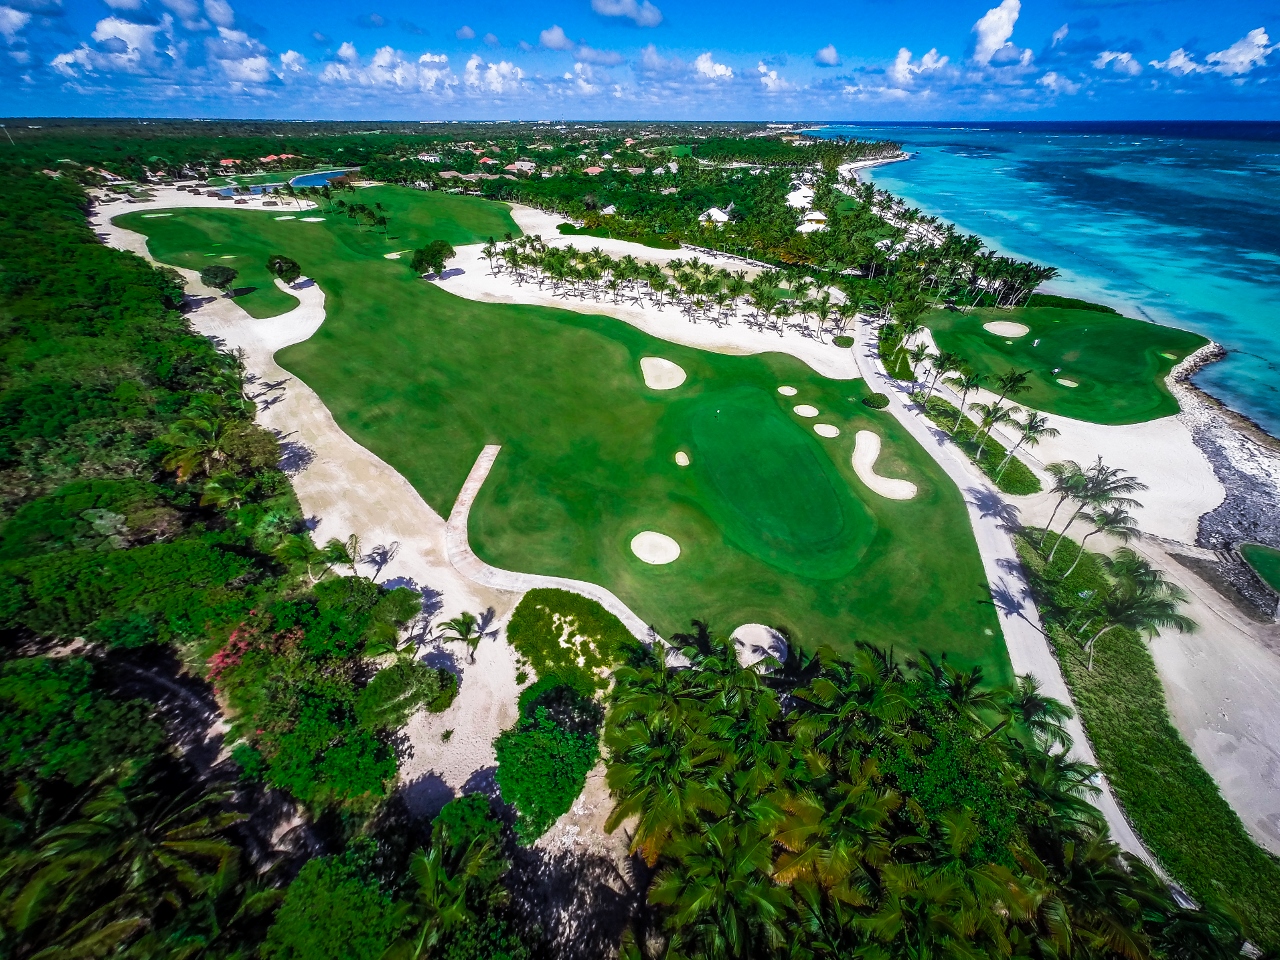 La Cana Golf Club acogerá tercera edición del U.S. Kids Golf Caribbean Championship